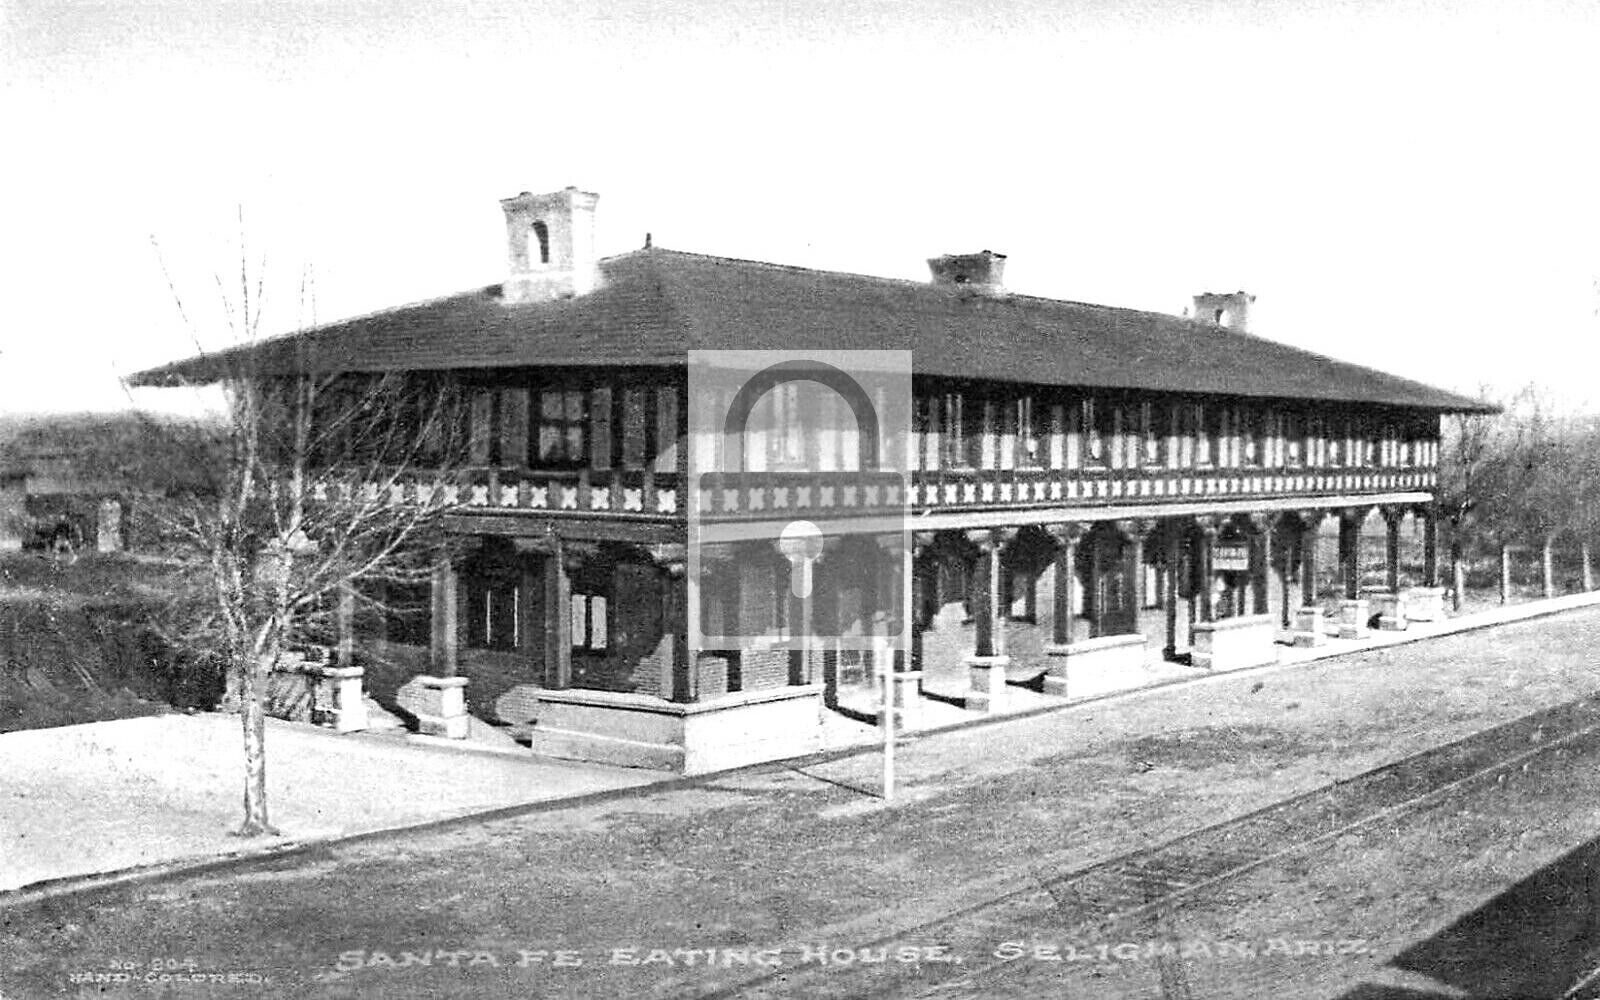 Santa Fe Eating House Railroad Seligman Arizona AZ Reprint Postcard